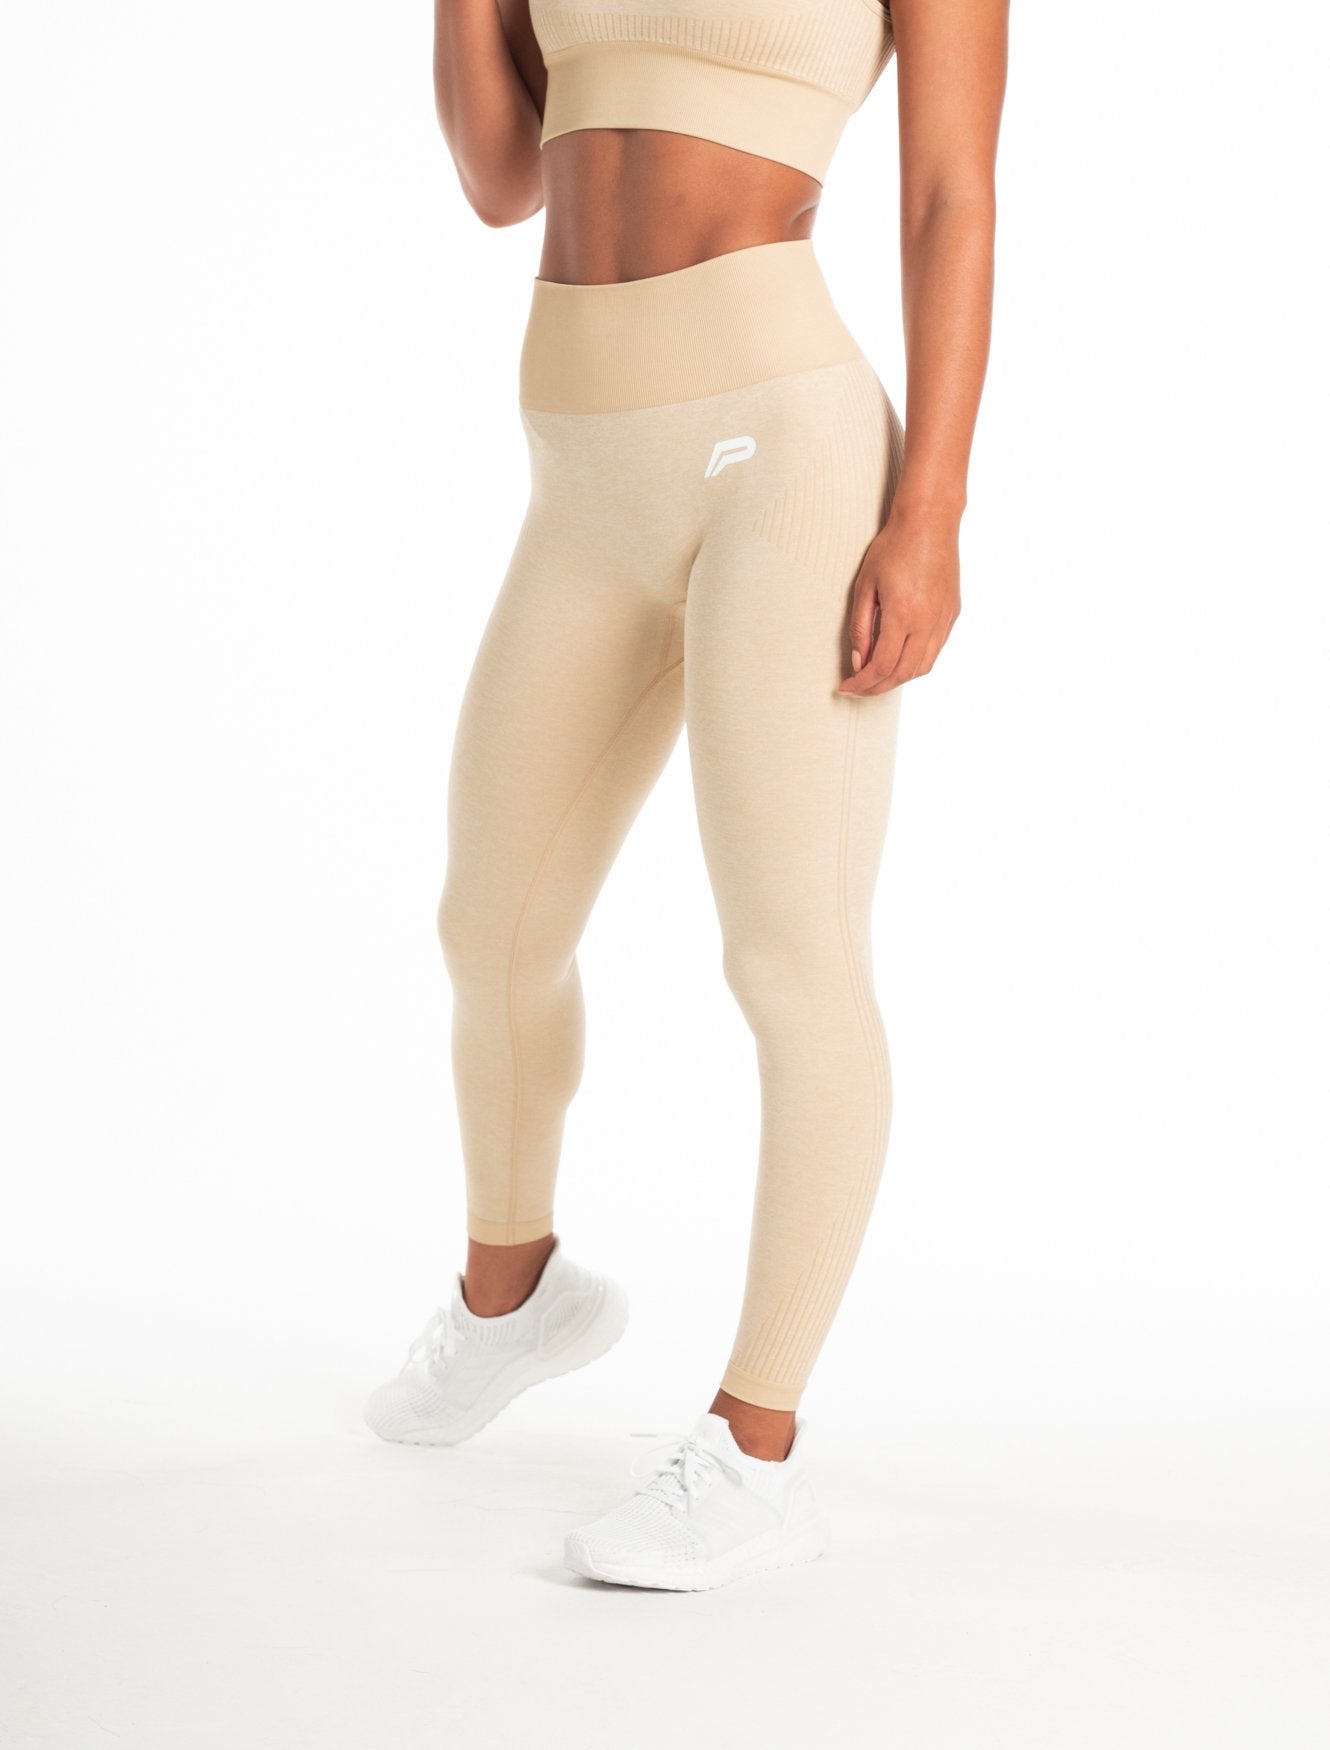 https://www.pursuefitness.com/cdn/shop/files/adapt-seamless-leggings-marl-beige-womens.jpg?crop=center&height=2048&v=1691675003&width=2048